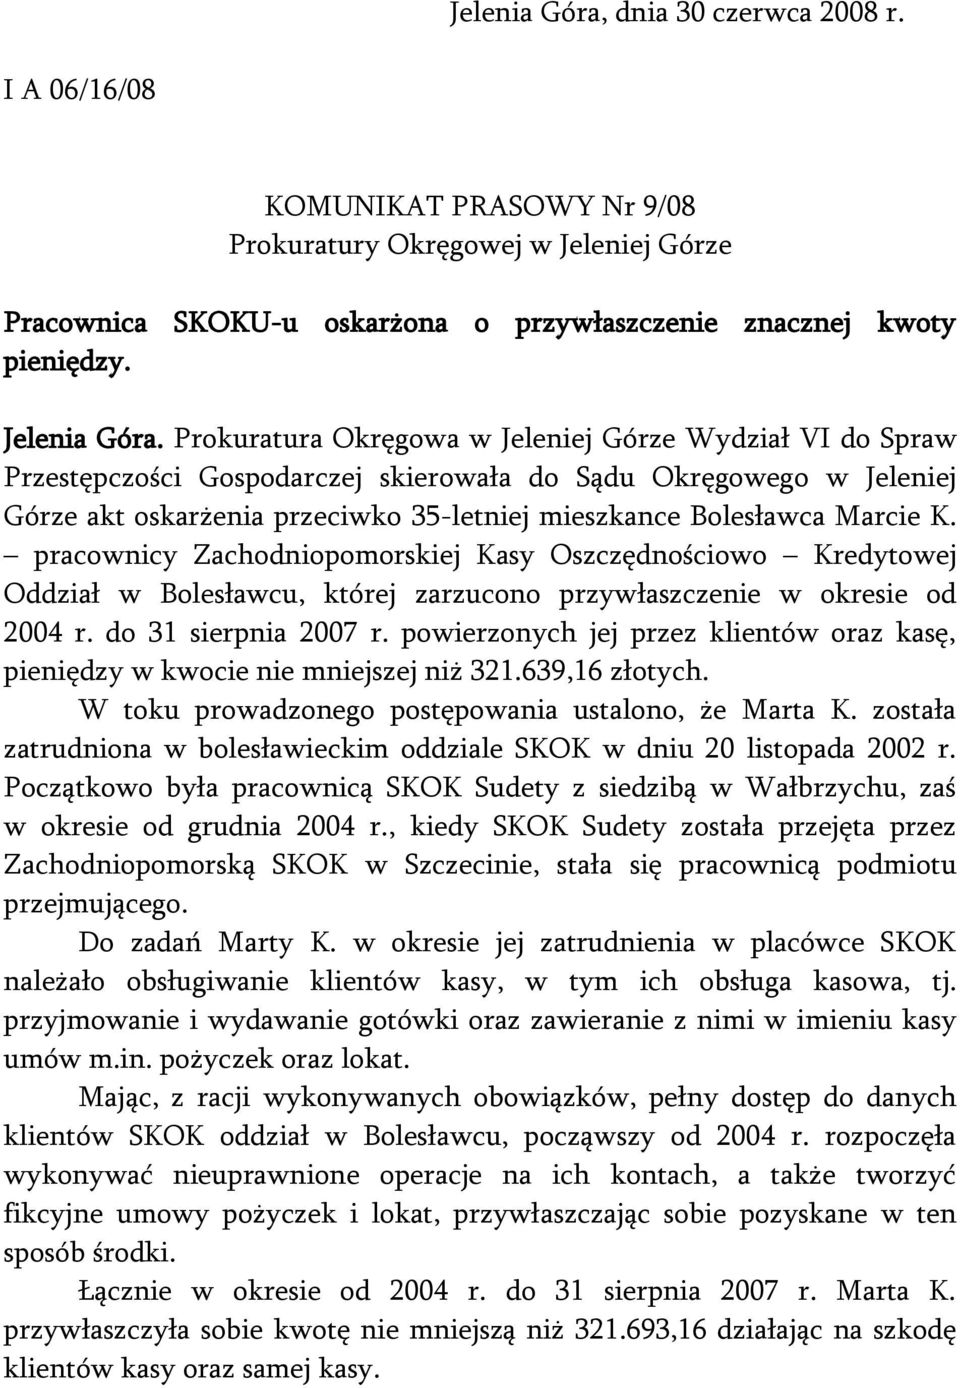 Prokuratura Okręgowa w Jeleniej Górze Wydział VI do Spraw Przestępczości Gospodarczej skierowała do Sądu Okręgowego w Jeleniej Górze akt oskarżenia przeciwko 35-letniej mieszkance Bolesławca Marcie K.